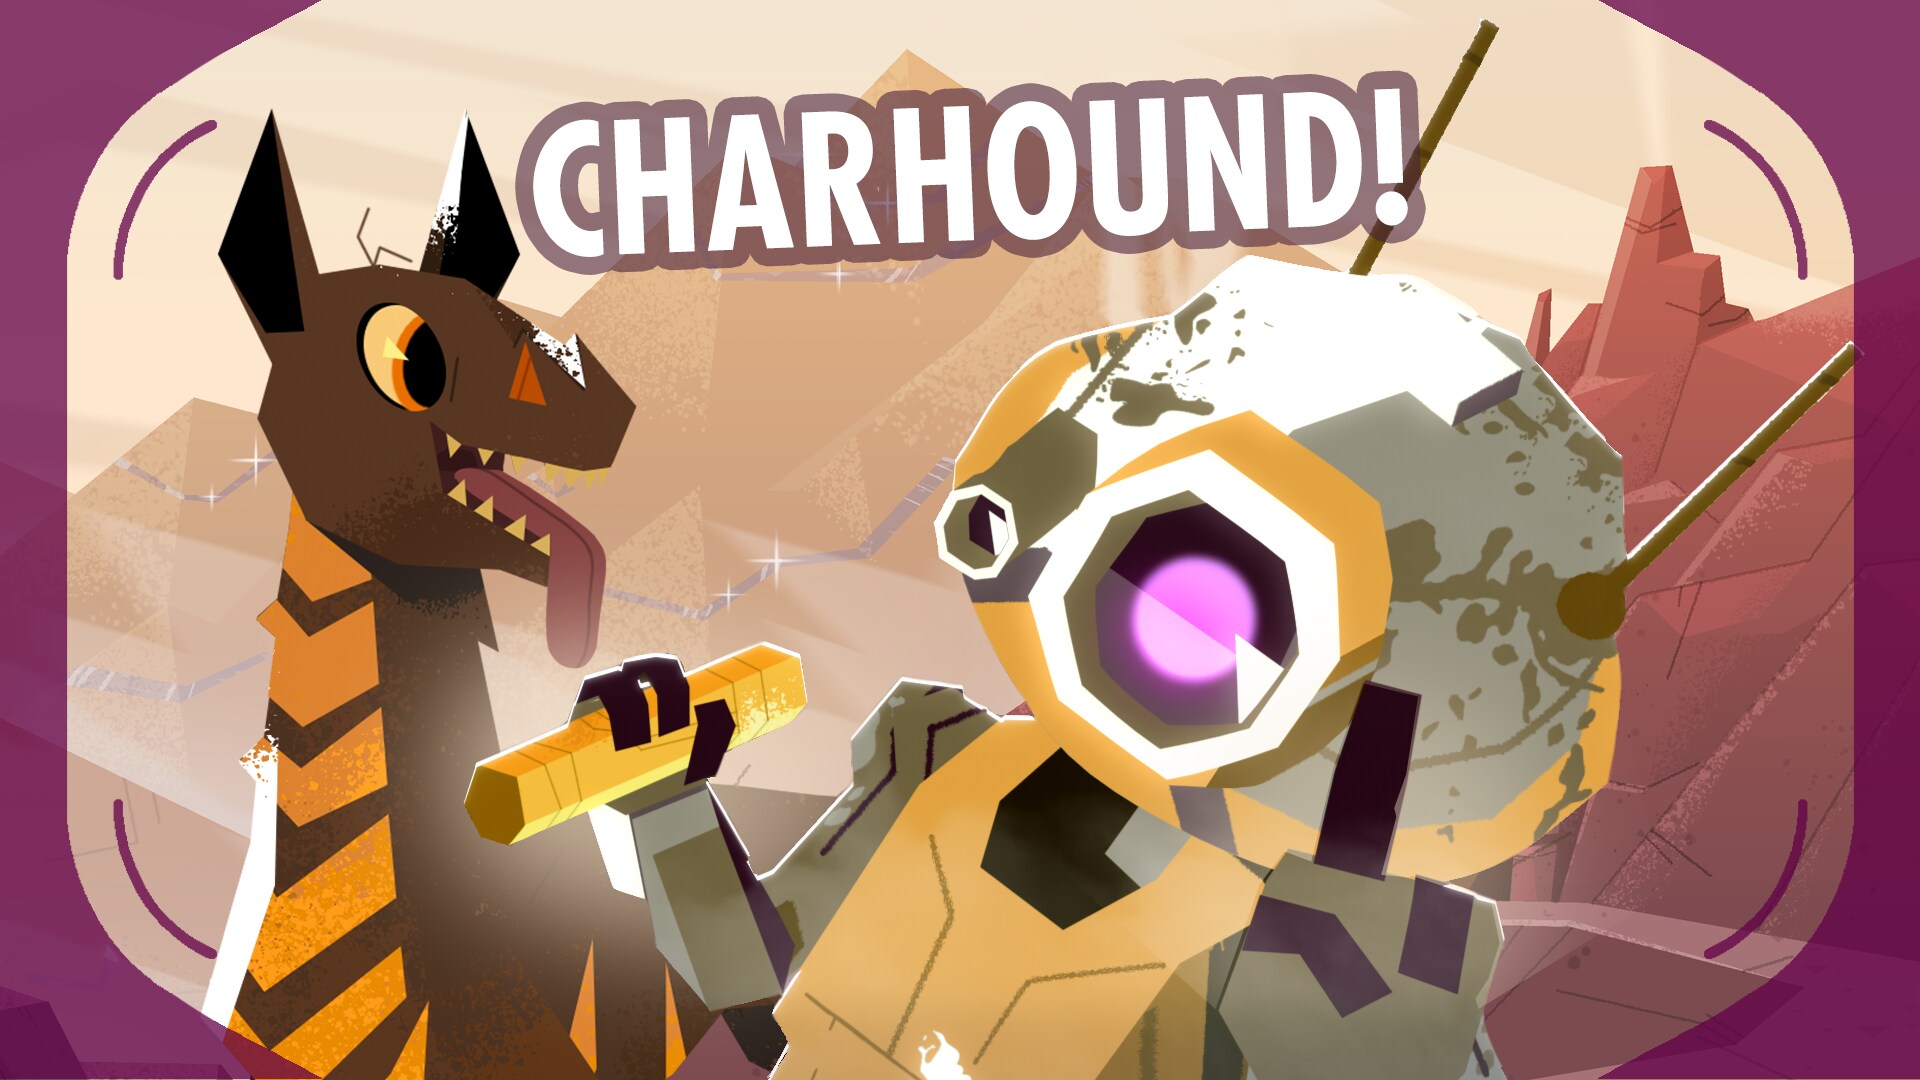 Charhound | Star Wars Galaxy of Creatures